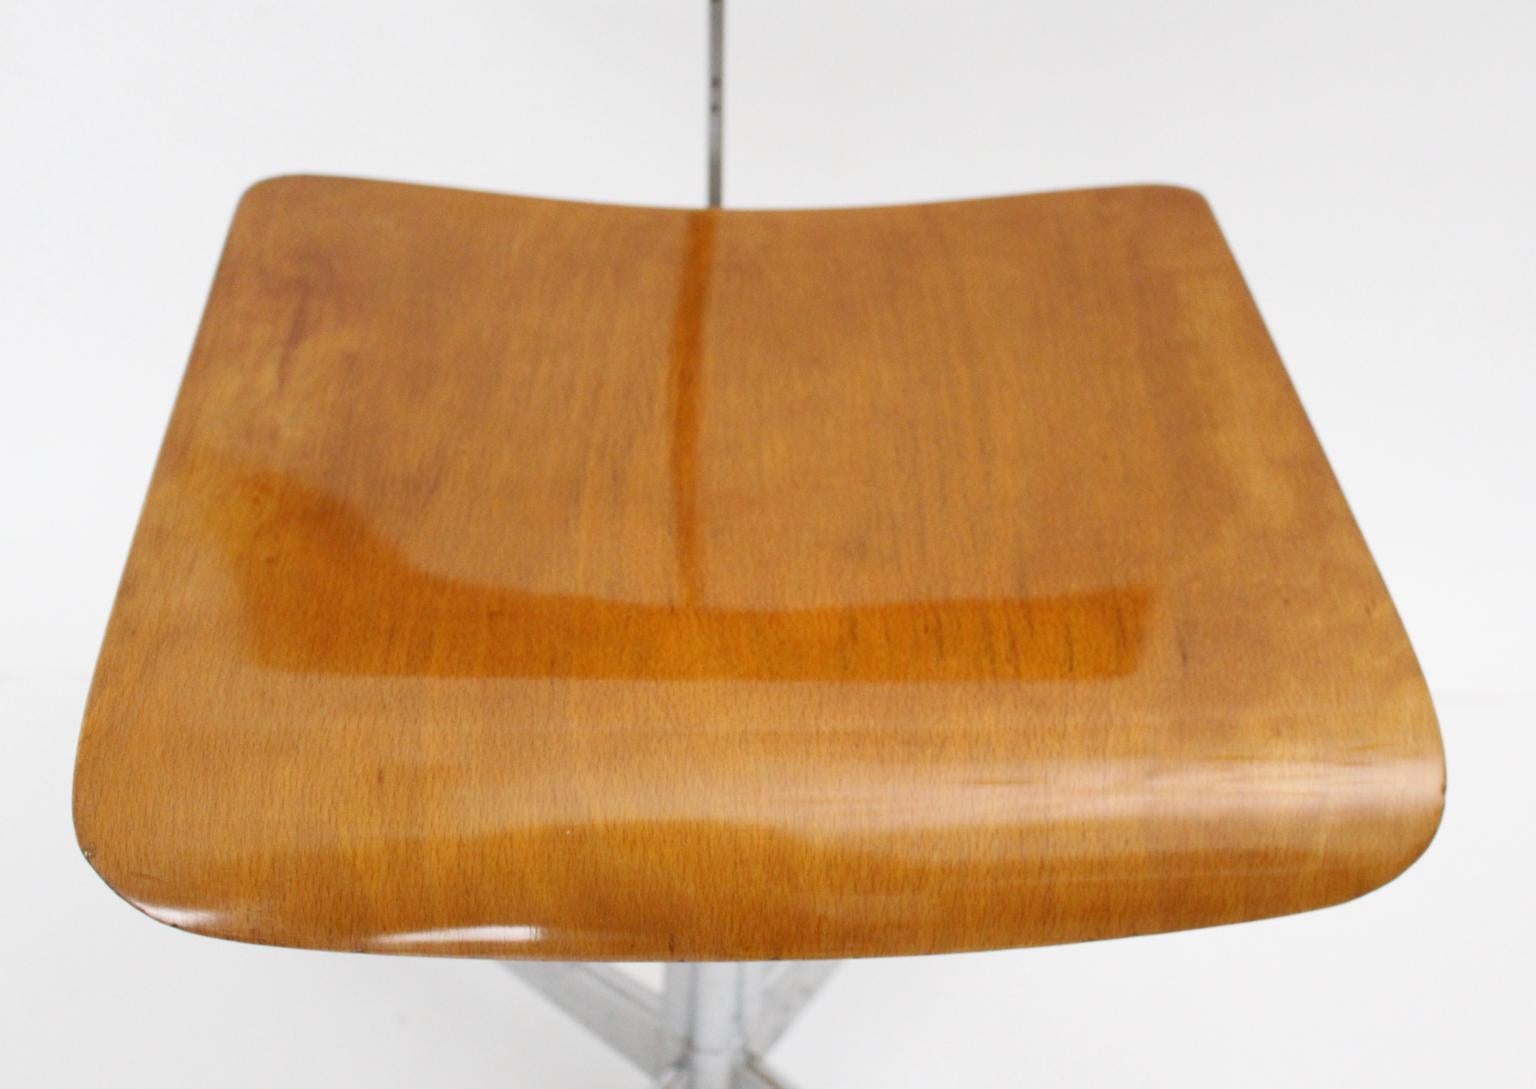 Mid-Century Modern Swiveling Desk Chair by Jorgen Rasmussen 1950s Denmark 1